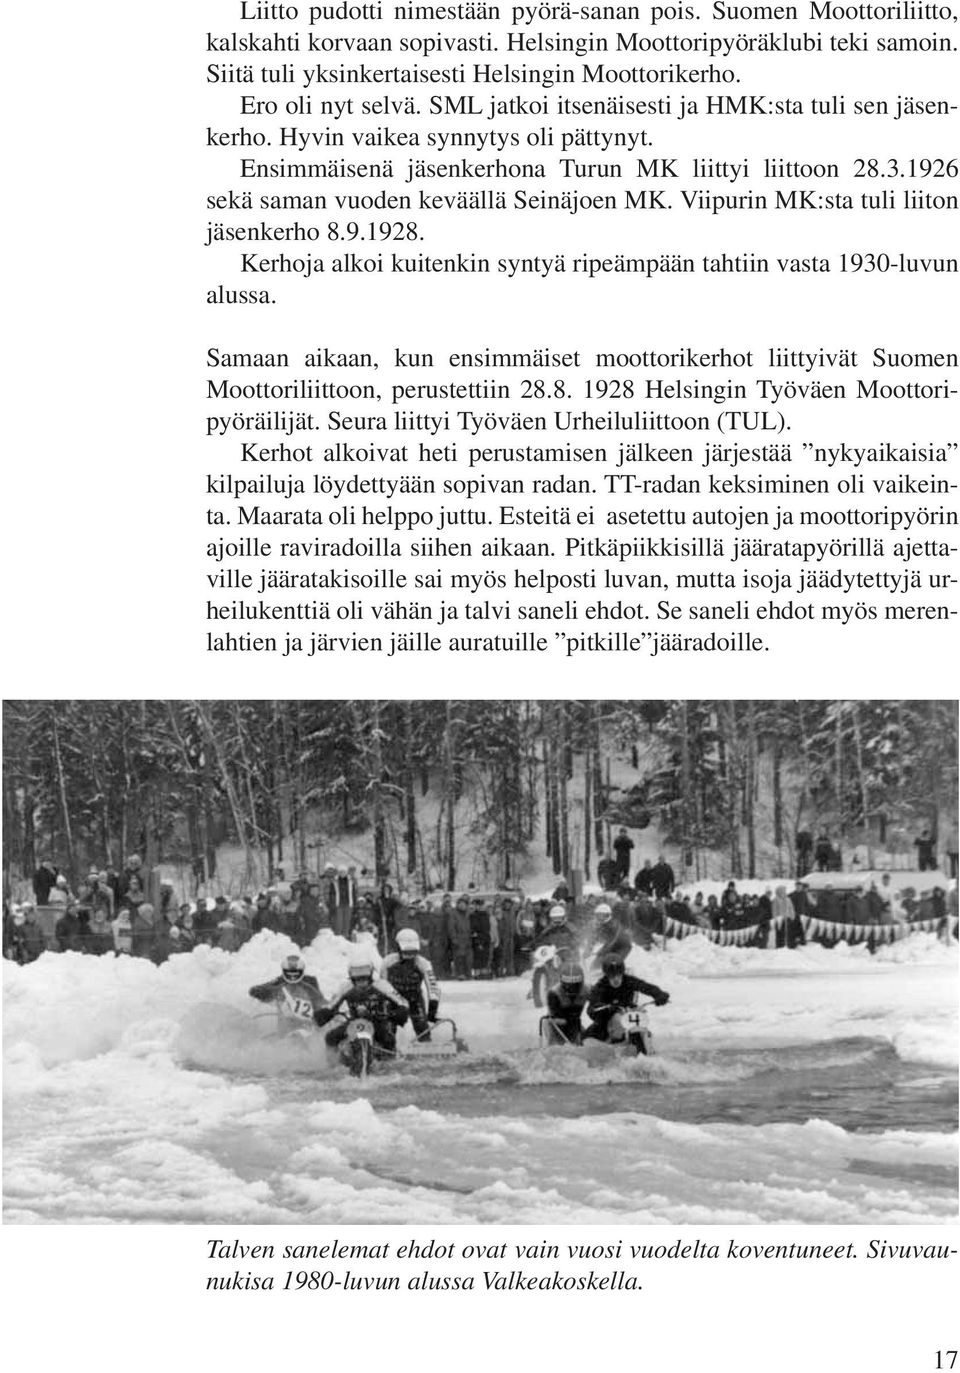 1926 sekä saman vuoden keväällä Seinäjoen MK. Viipurin MK:sta tuli liiton jäsenkerho 8.9.1928. Kerhoja alkoi kuitenkin syntyä ripeämpään tahtiin vasta 1930-luvun alussa.